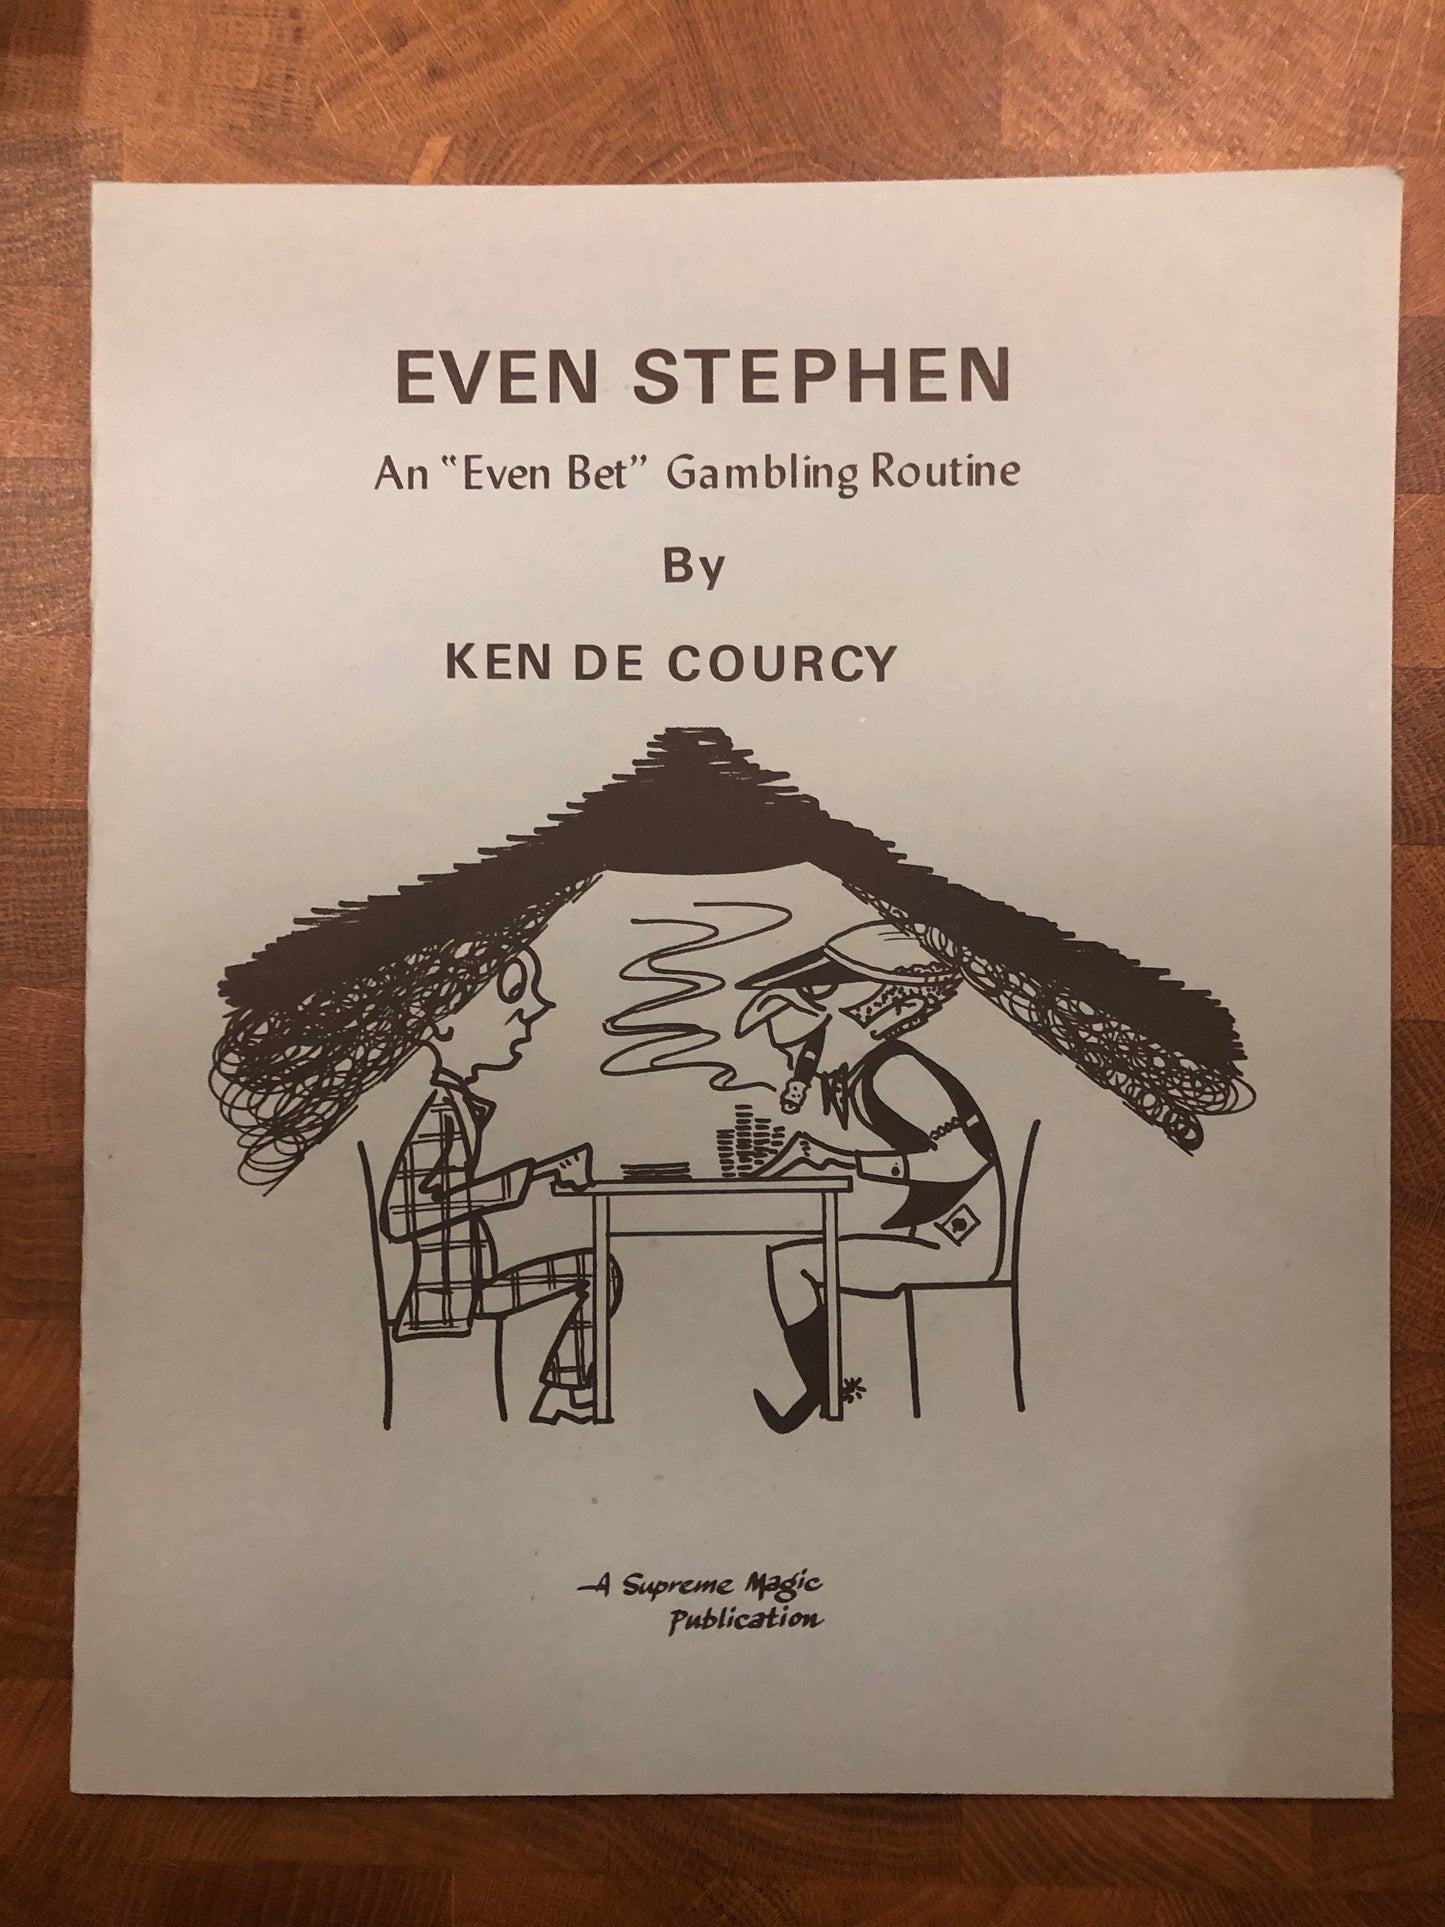 Even Stephen: An "Even Bet" Gambling Routine - Ken De Courcy